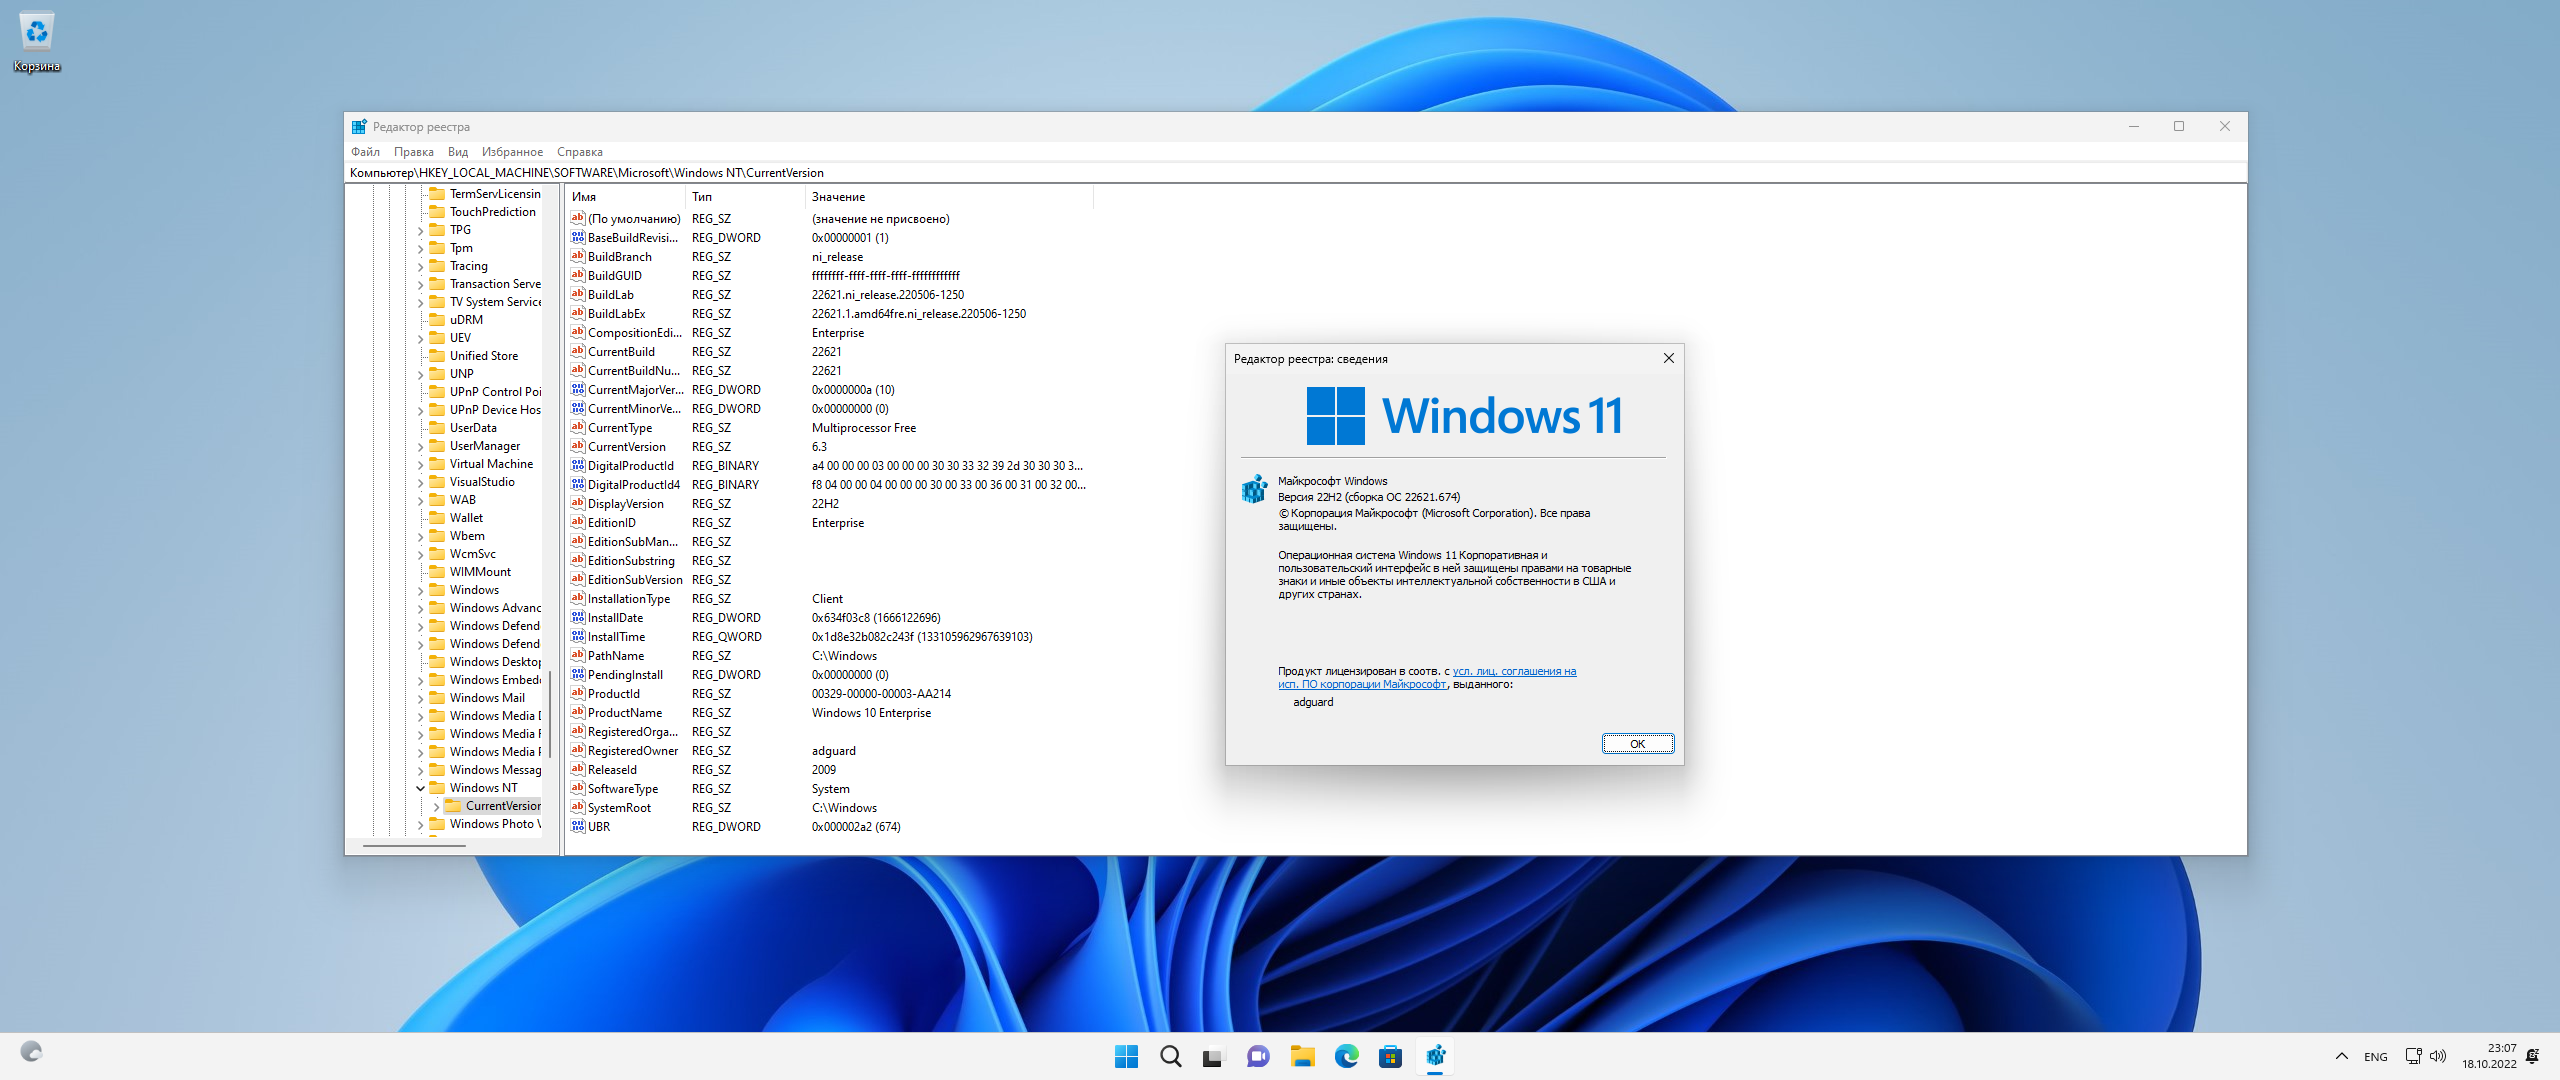 Windows 11 offline. Виндовс 10 версия 21h2 64 бит. Интерфейс 11 винды. Win 11 Скриншоты. Обновление виндовс 11.